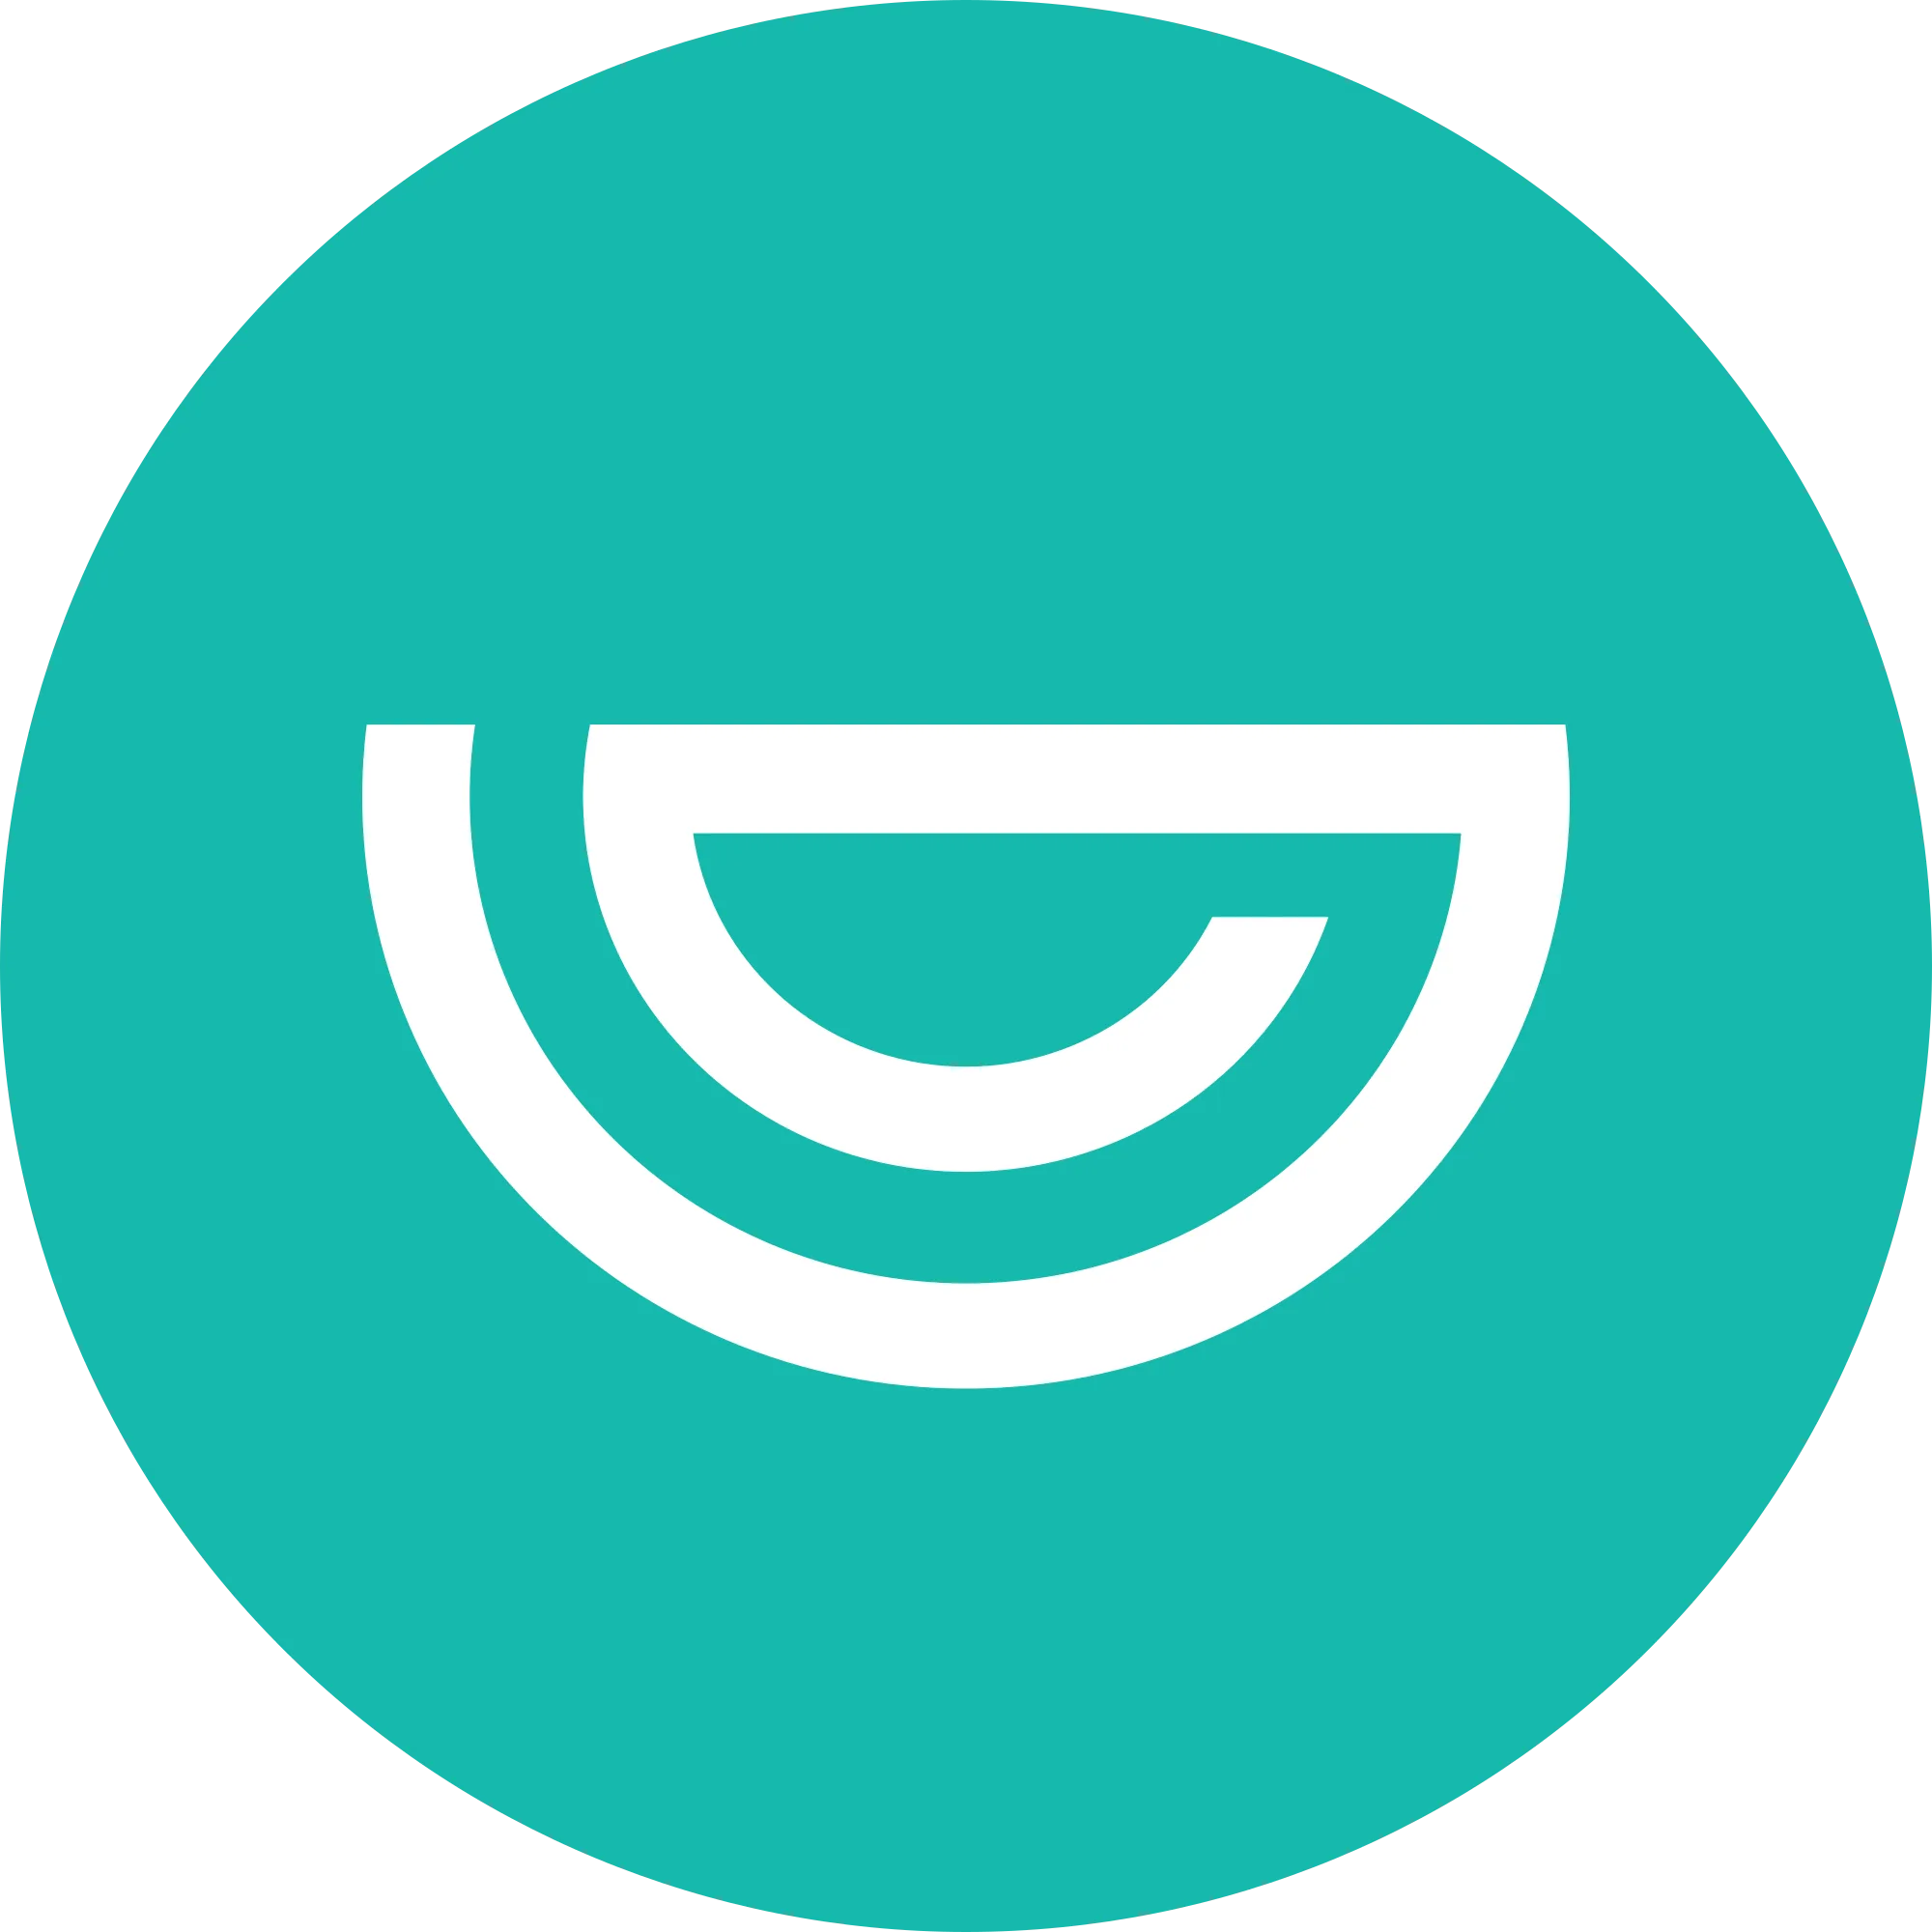 Genesis Vision (GVT) logo